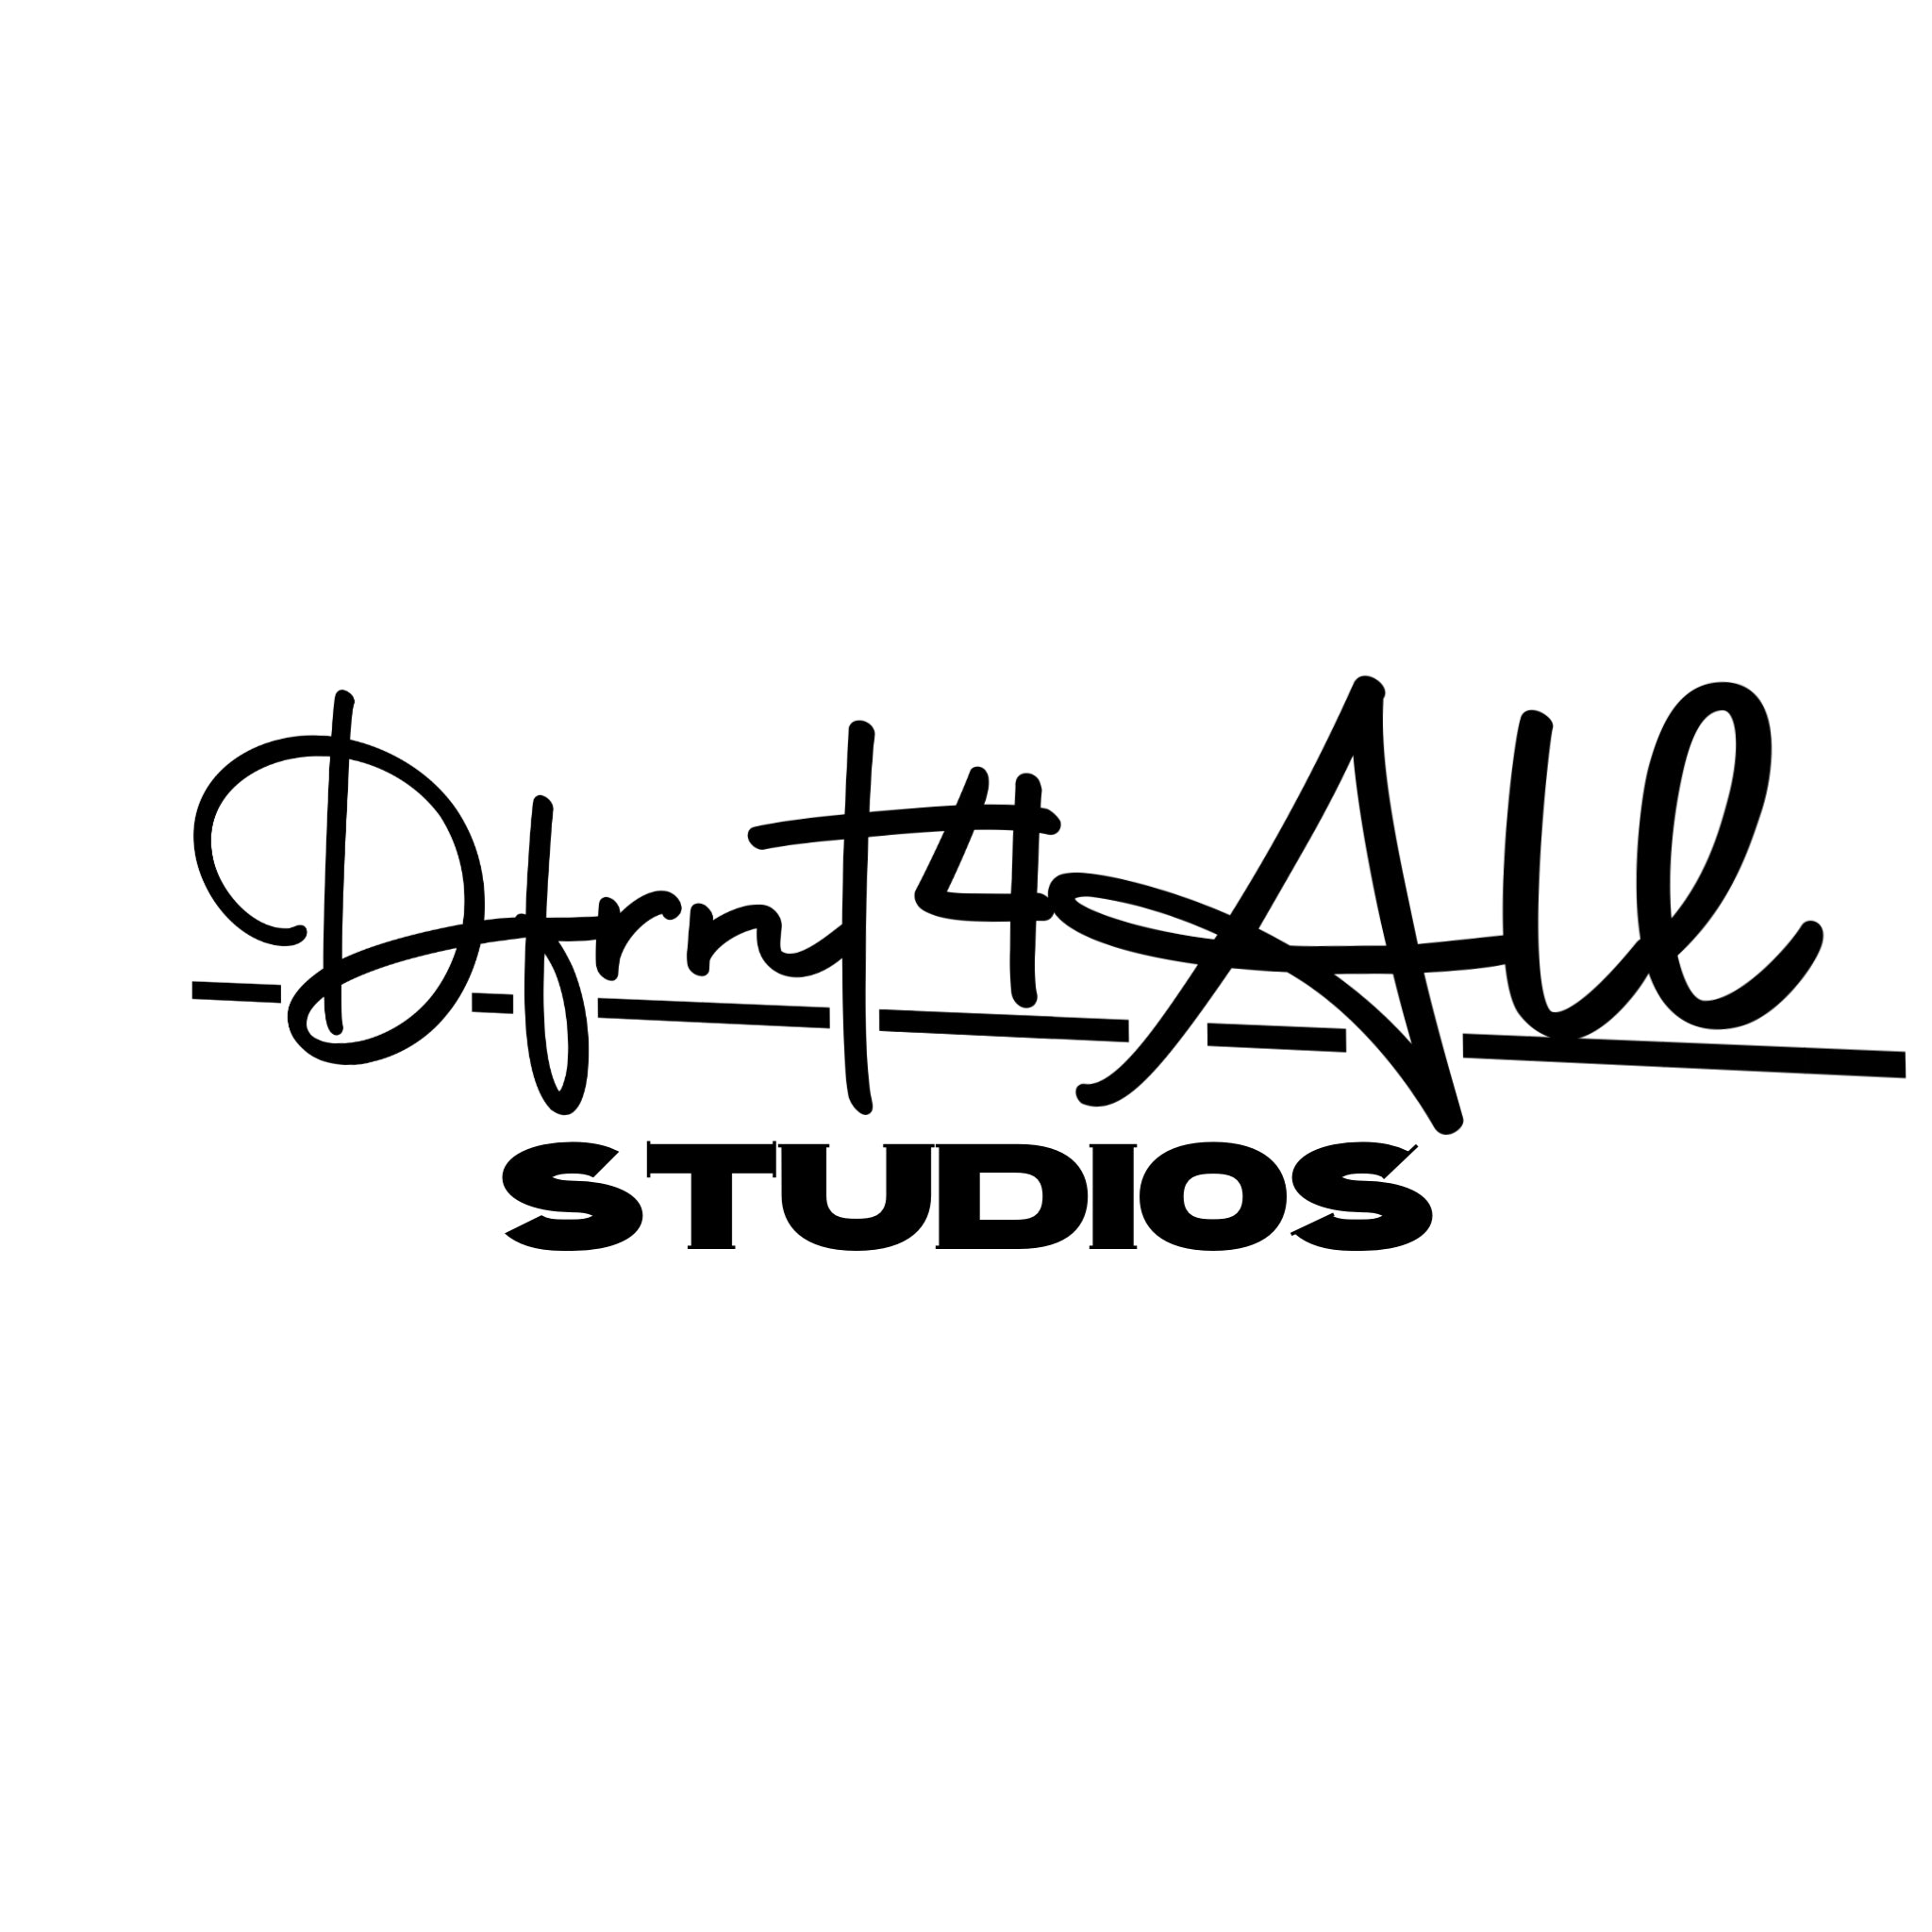 D4A.Studios